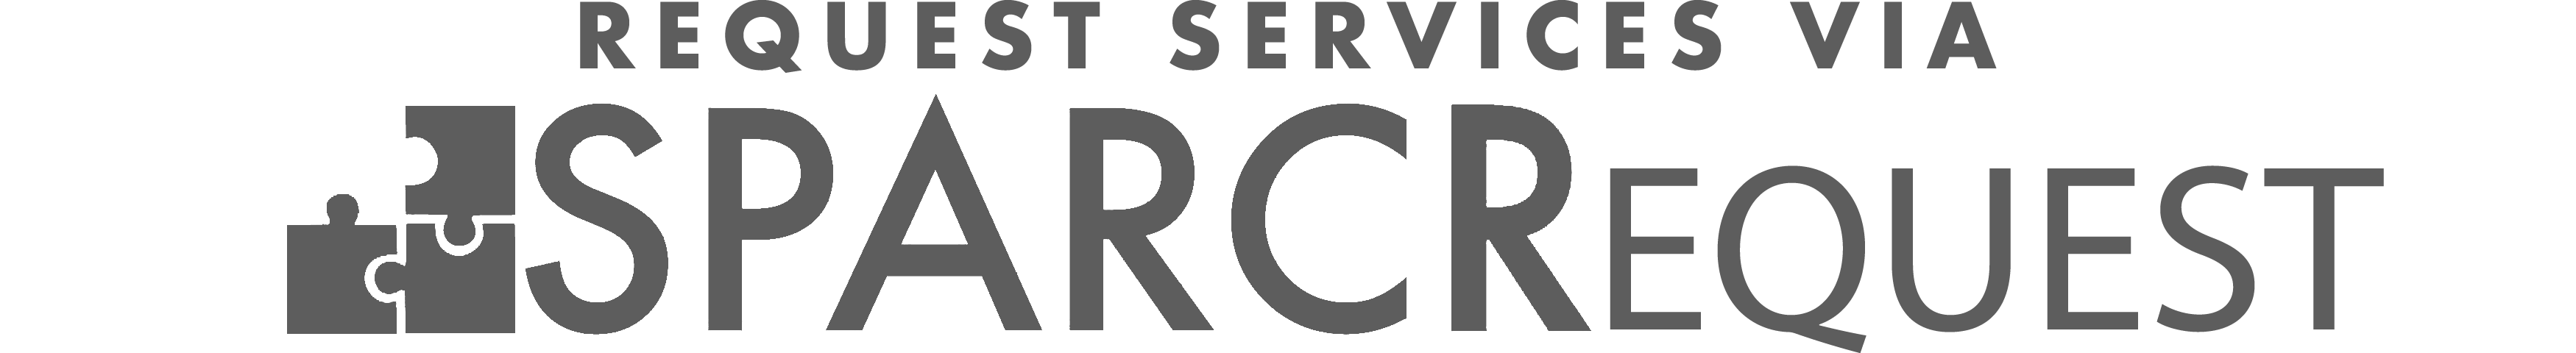 Request SPARC Services